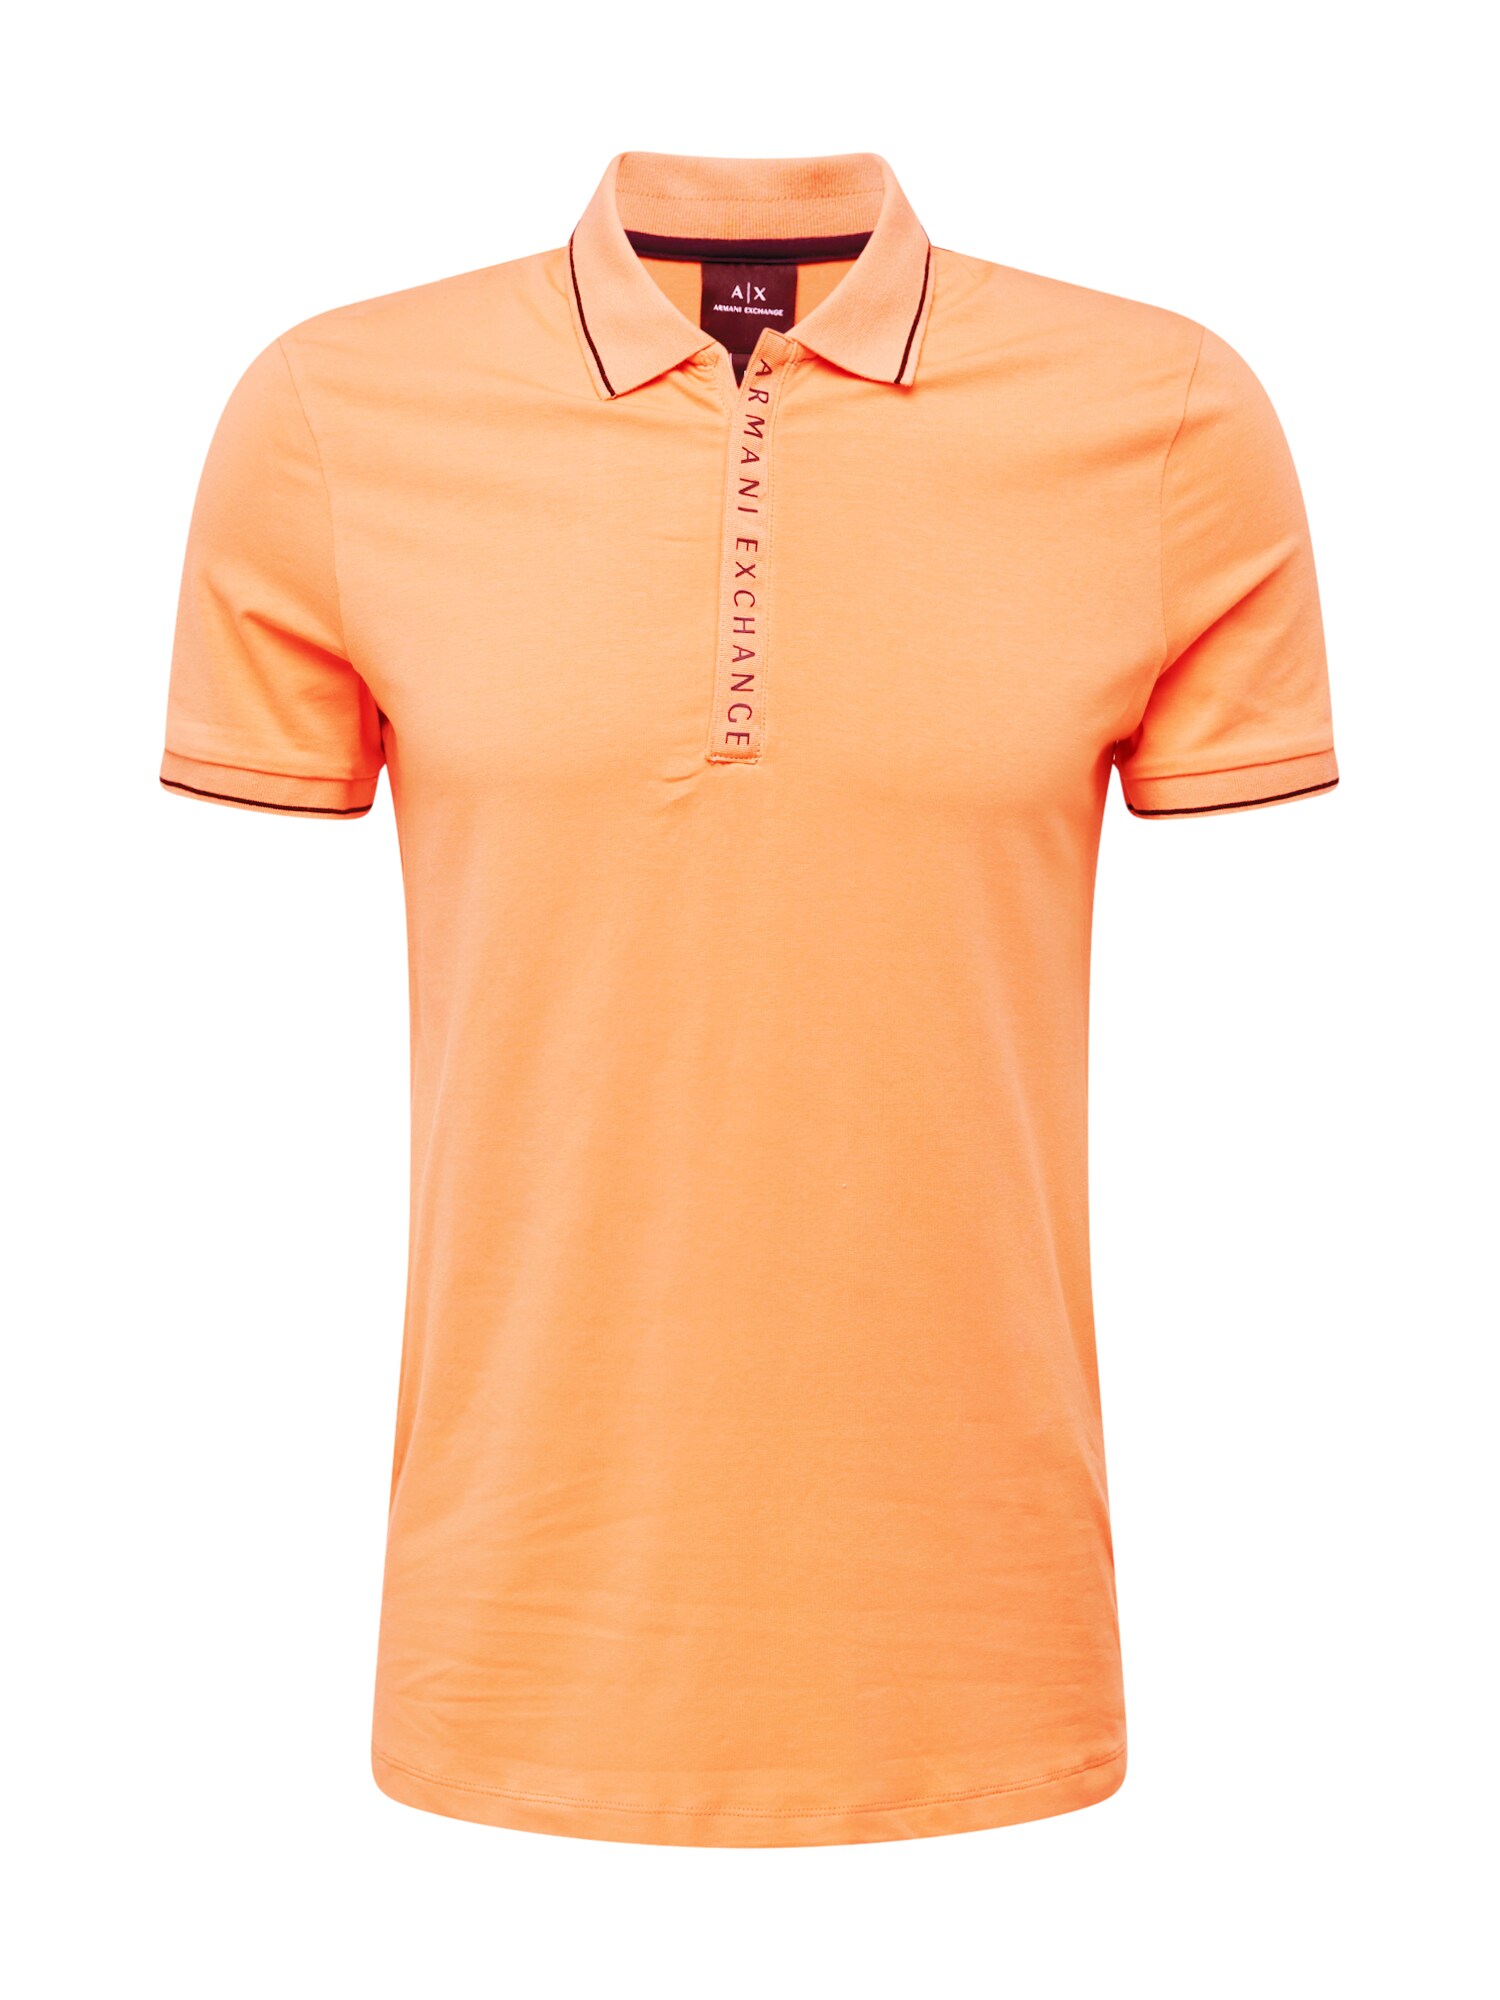 ARMANI EXCHANGE Marškinėliai oranžinė / juoda